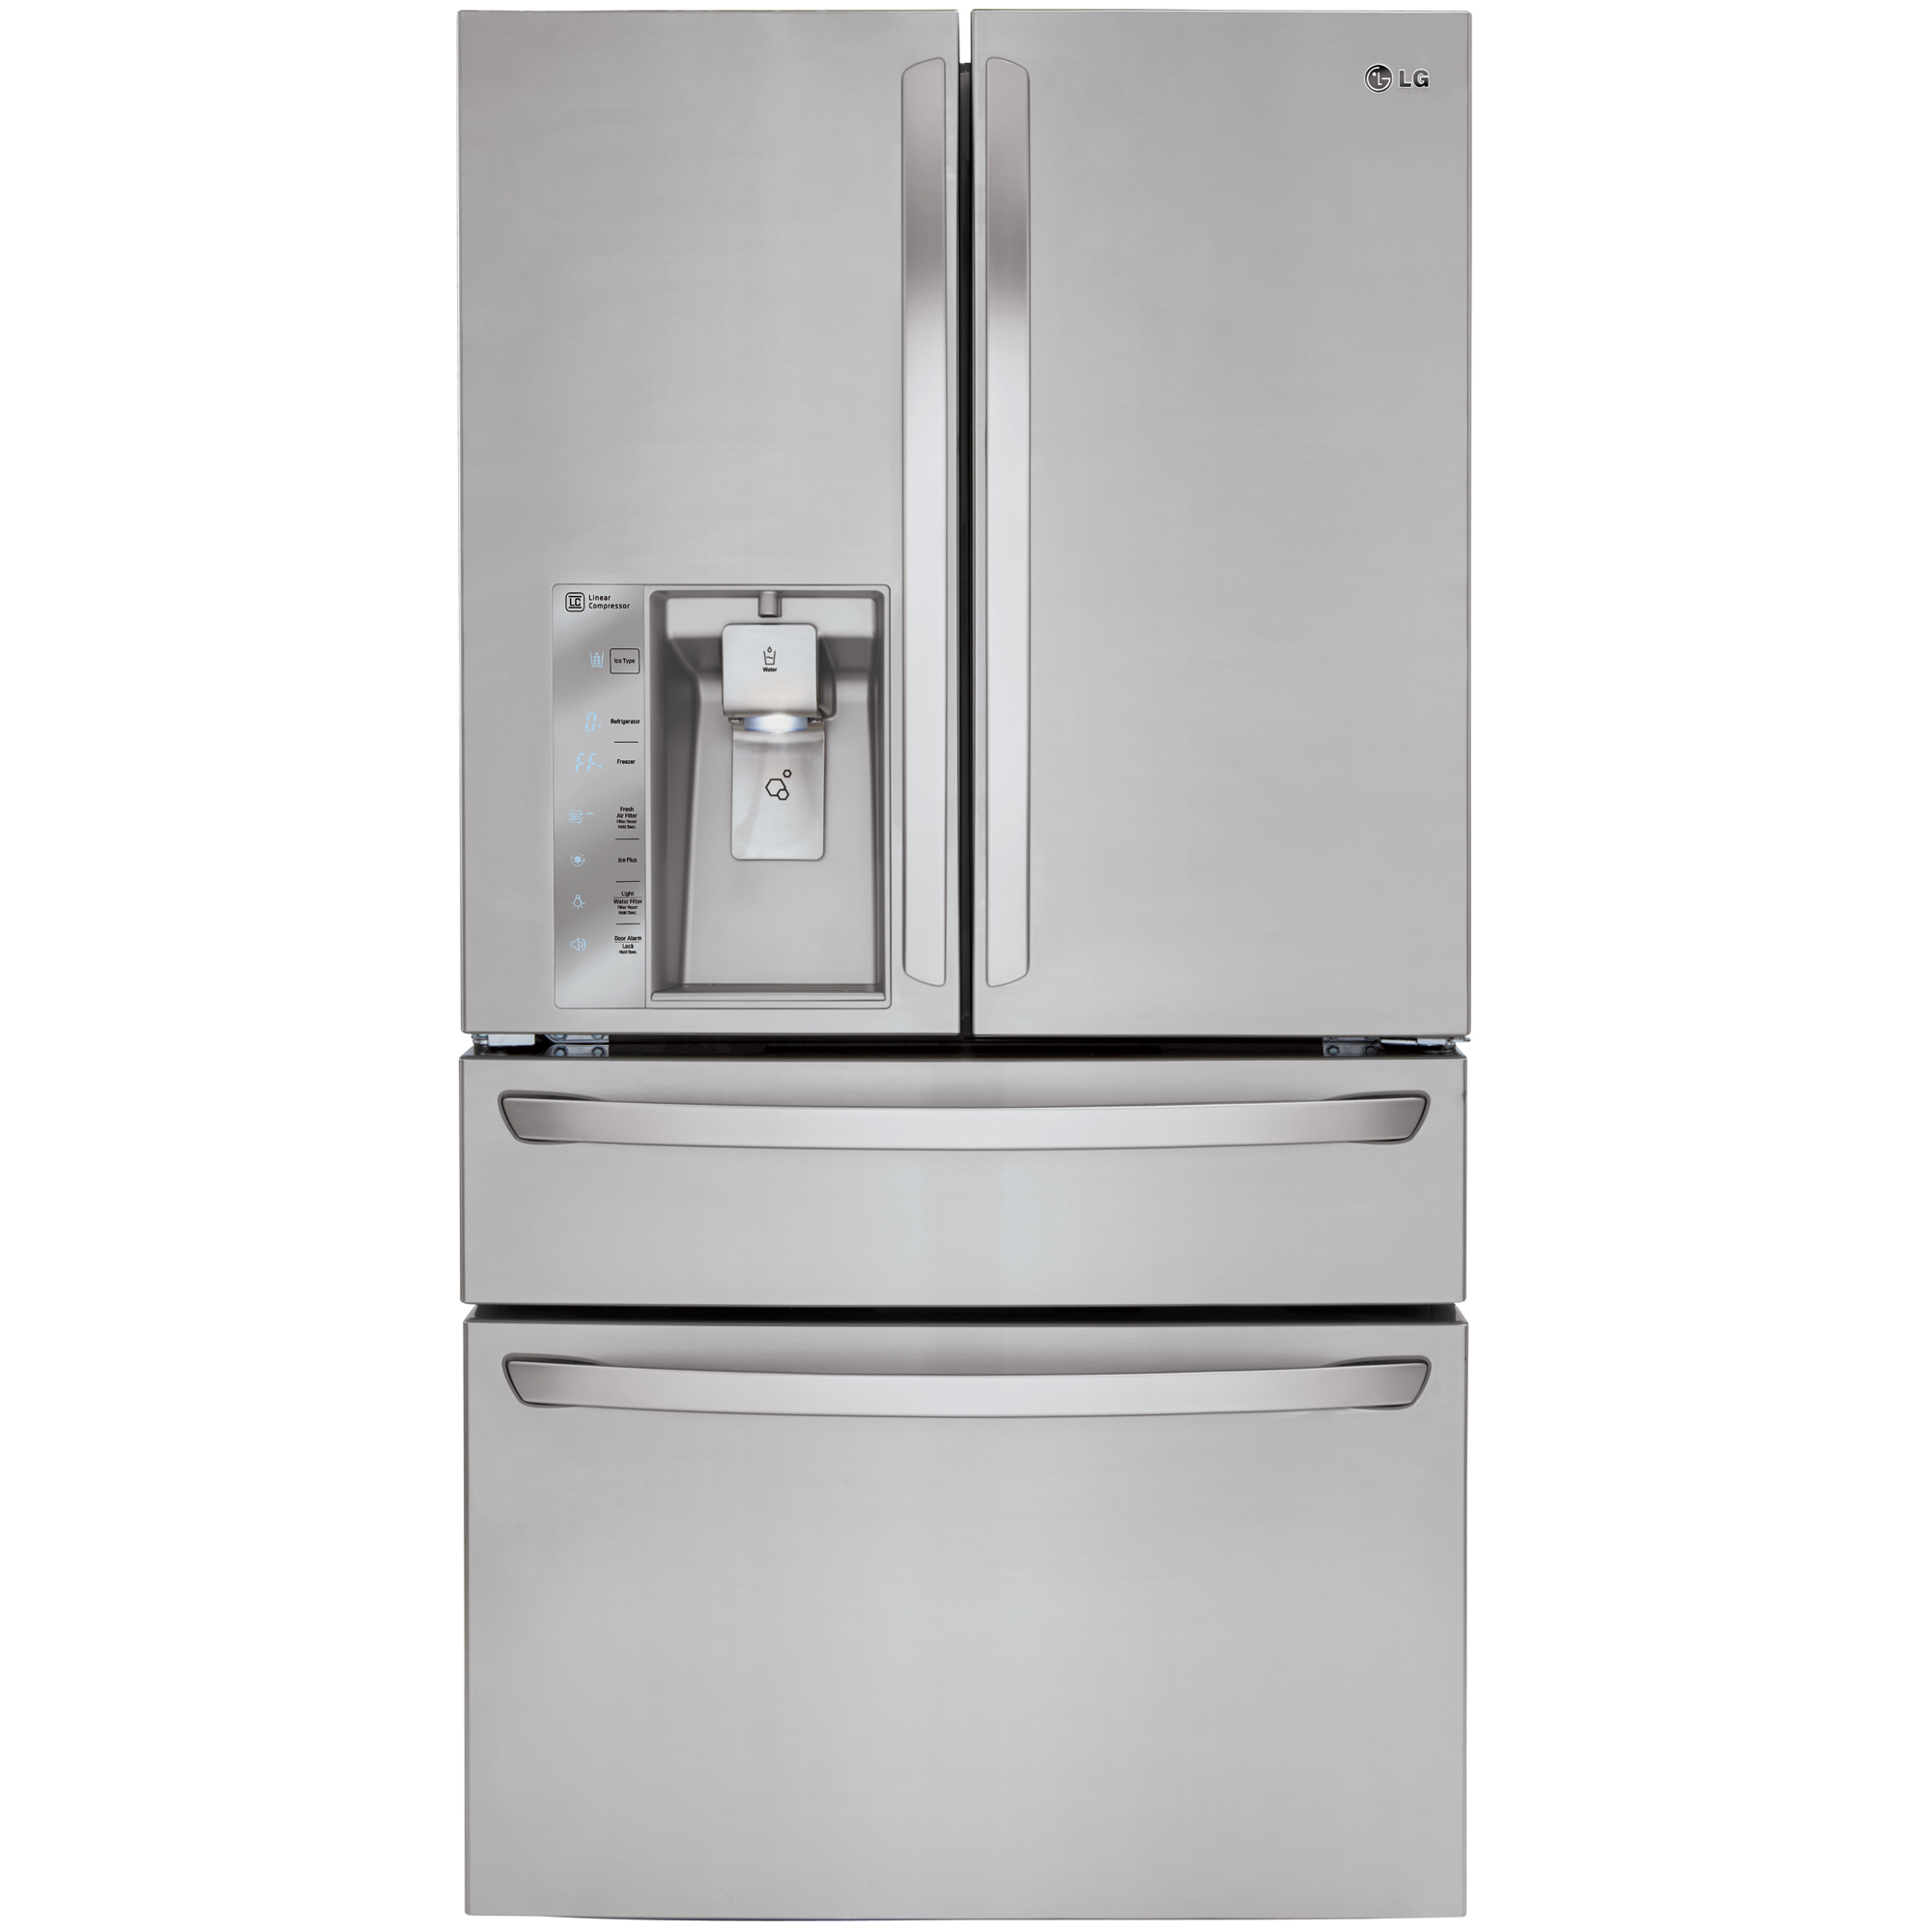 LG LMXC23746S 23 cu.ft. 4-Door French Door Counter-Depth Refrigerator